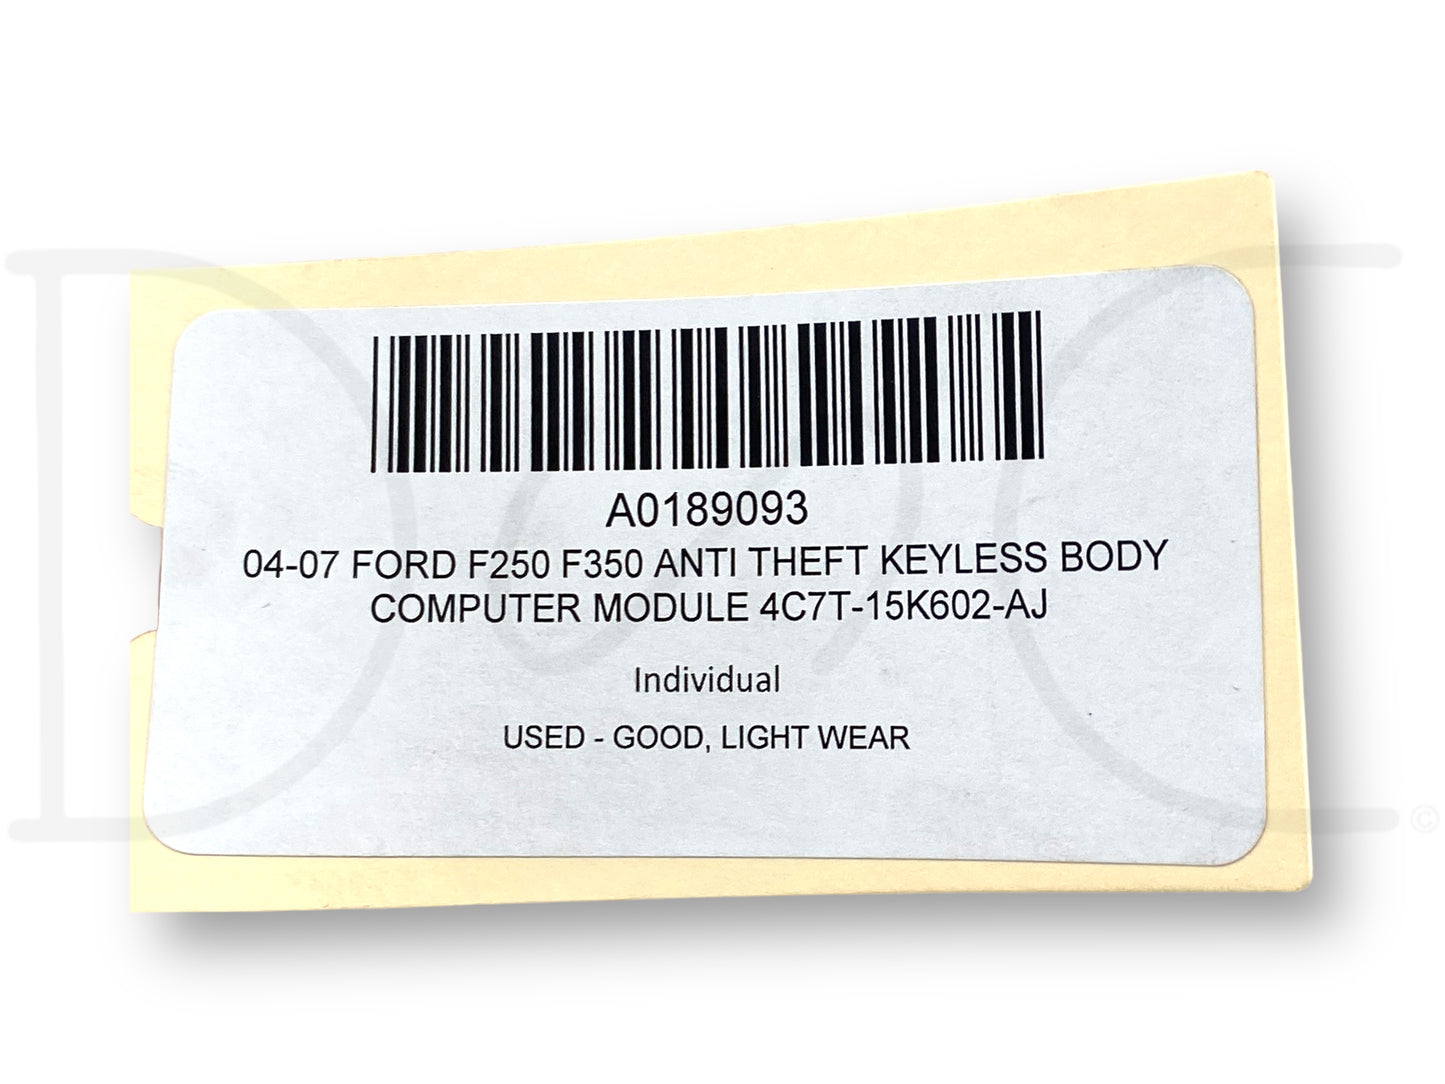 04-07 Ford F250 F350 Anti Theft Keyless Body Computer Module 4C7T-15K602-Aj